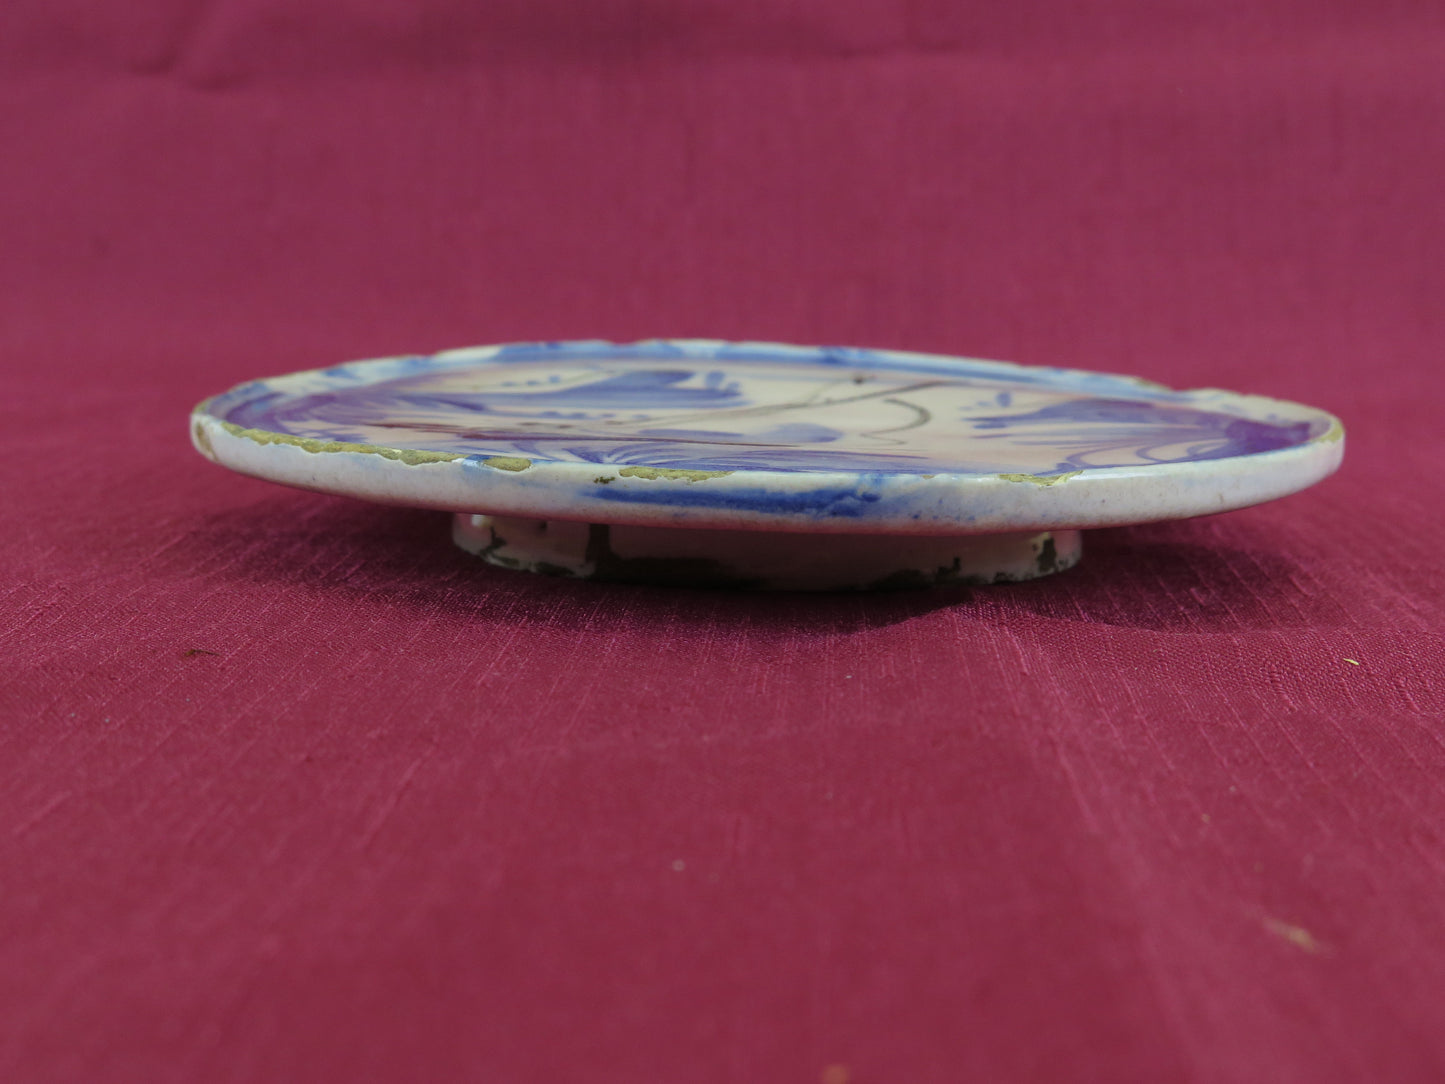 Antique 18th century Savona ceramic plate saucer vs14